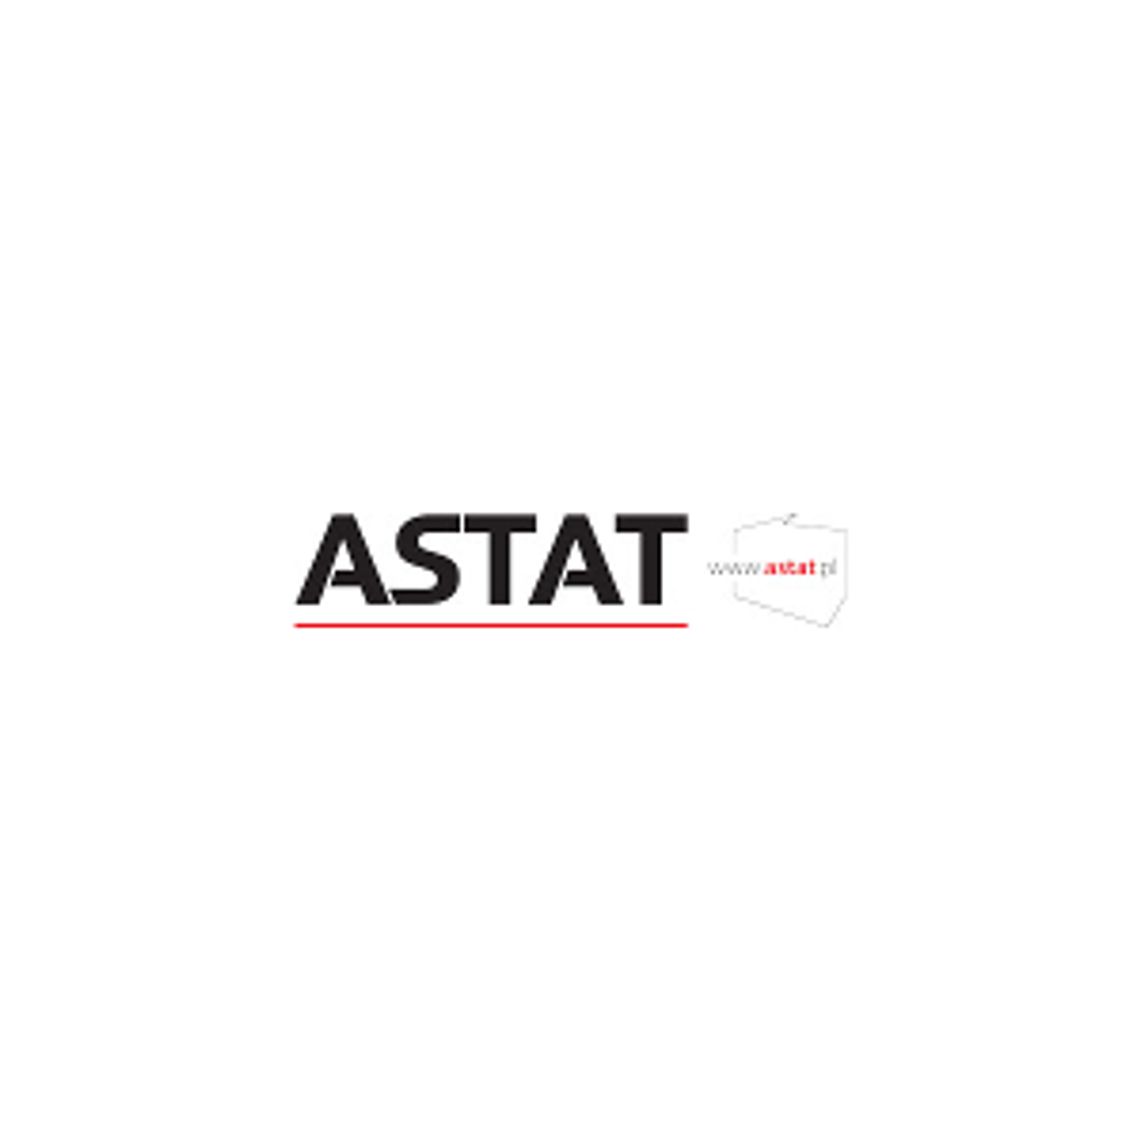 Specjaliści w zakresie automatyki przemysłowej - Grupa ASTAT